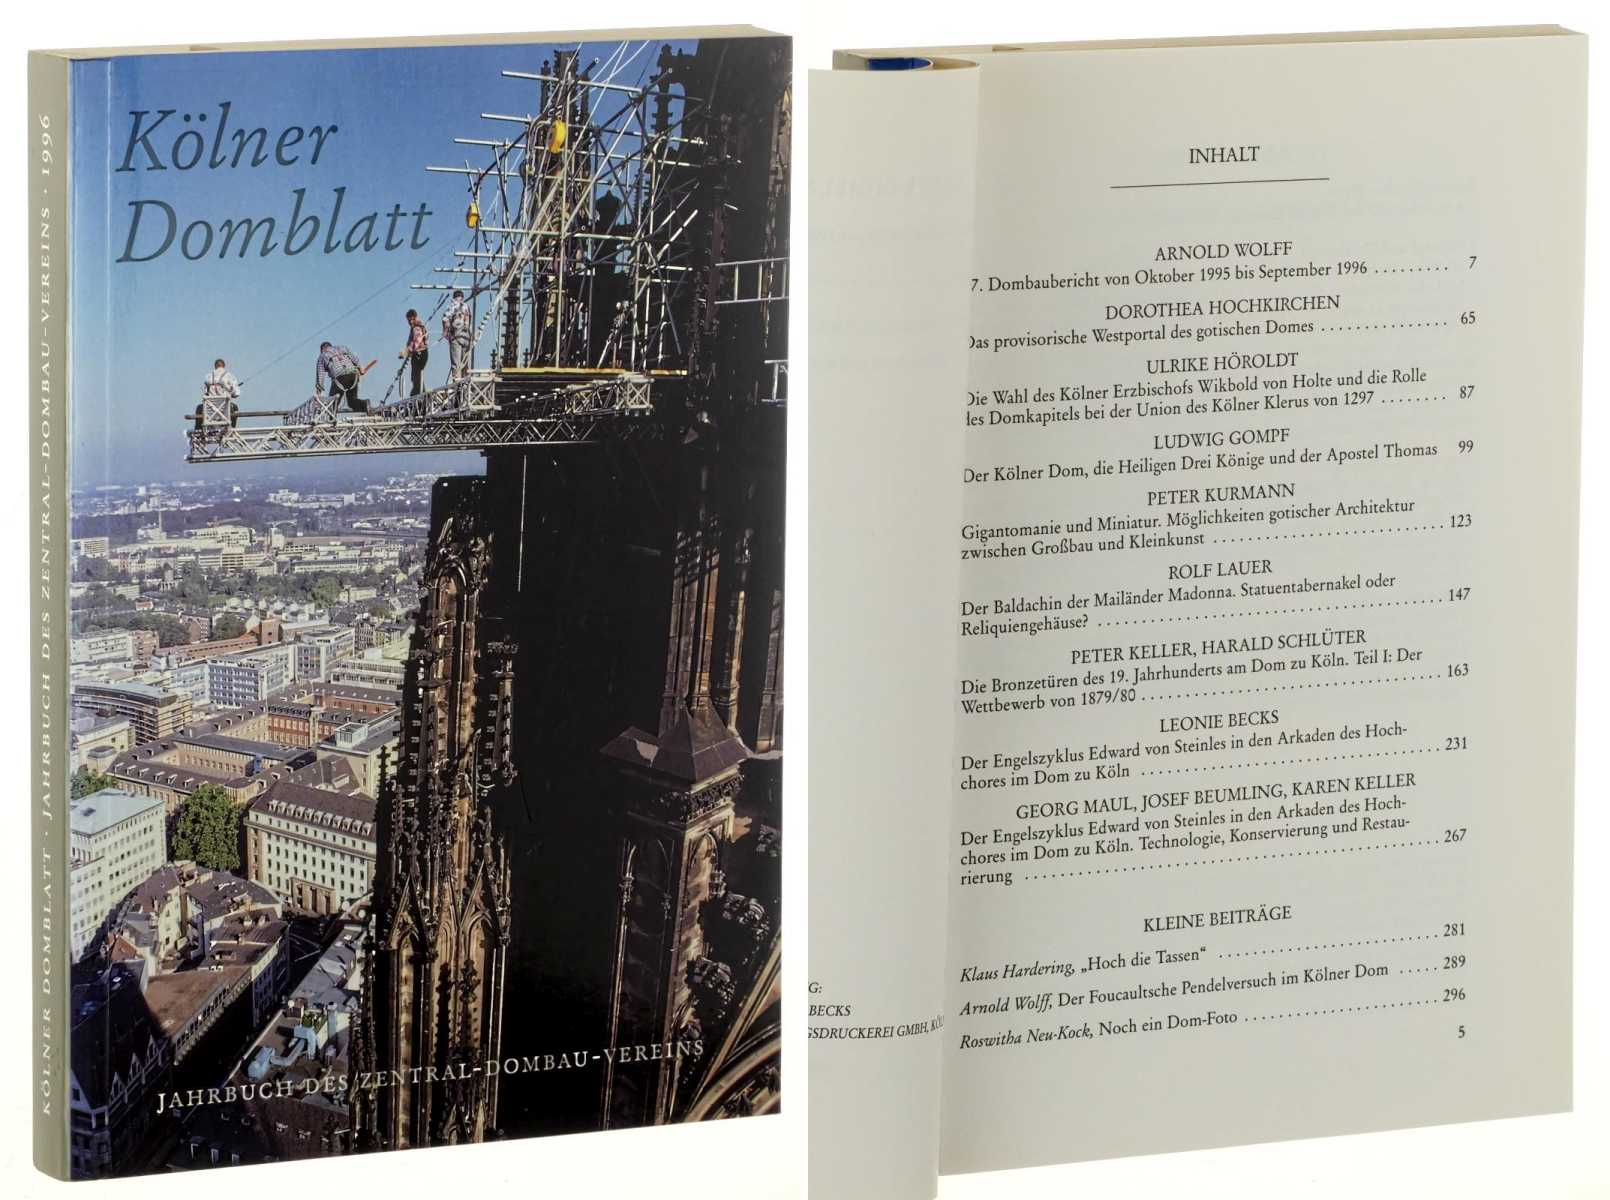   Kölner Domblatt. Jahrbuch des Zentral-Dombau-Vereins. Hrsg. von Arnold Wolff und Rolf Lauer. 